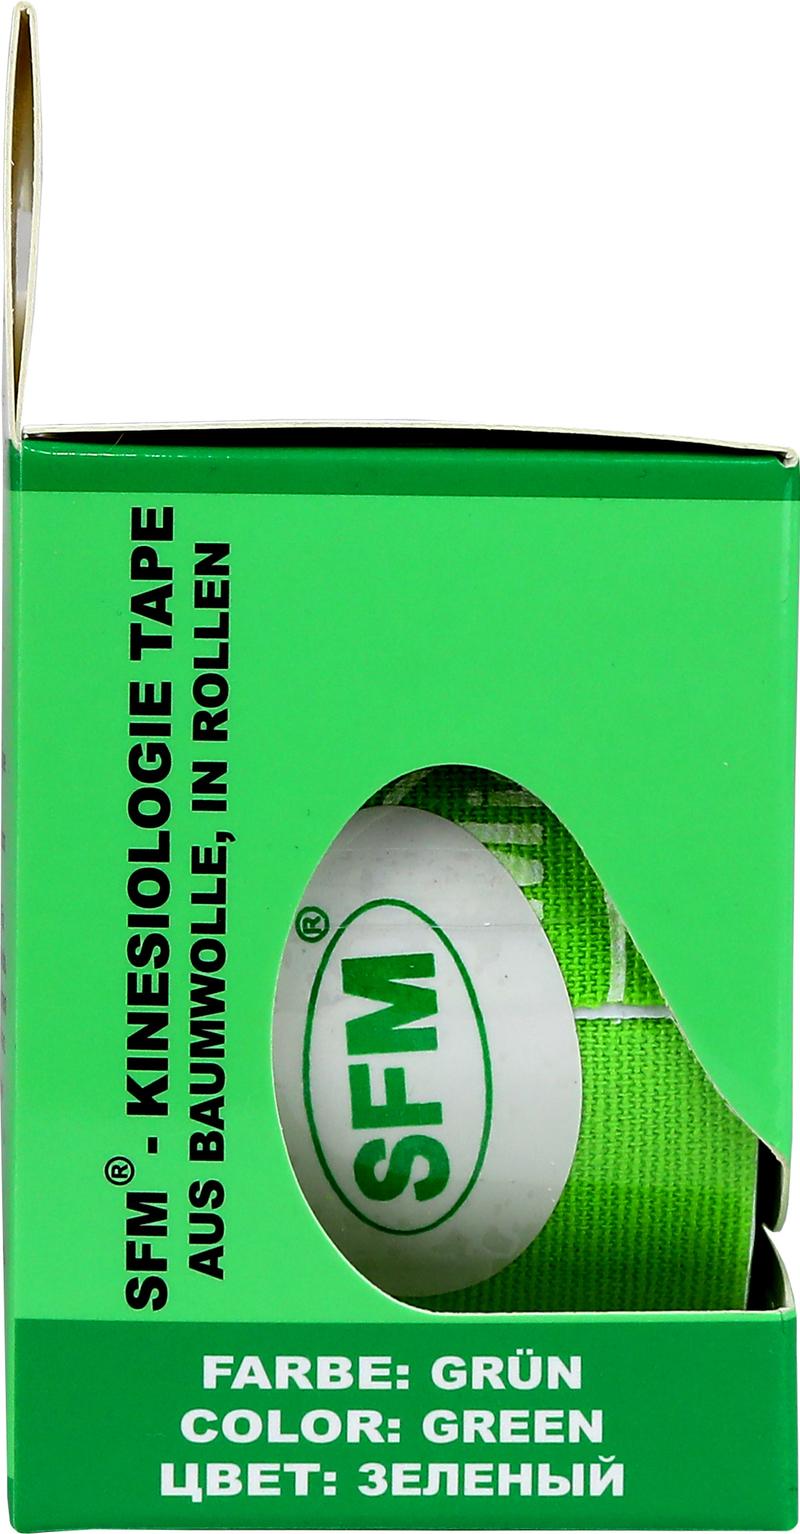 Лента кинезиологическая SFM-Plaster, на хлопковой основе, 5см Х 500см, зеленого цвета, в диспенсере, с логотипом